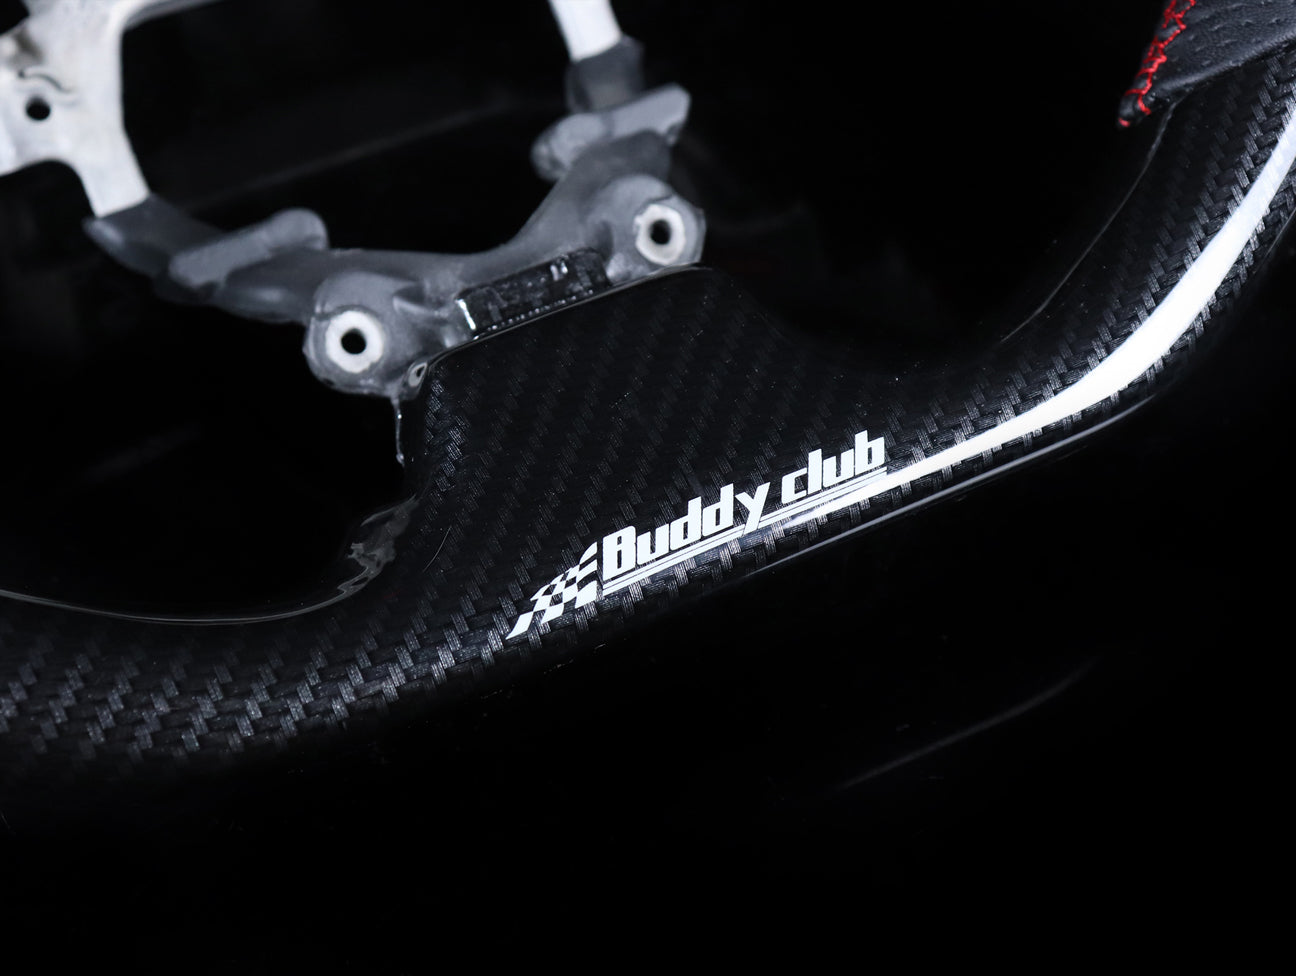 Buddy Club Racing Spec Carbon Steering Wheel - 2015-2018 Fit